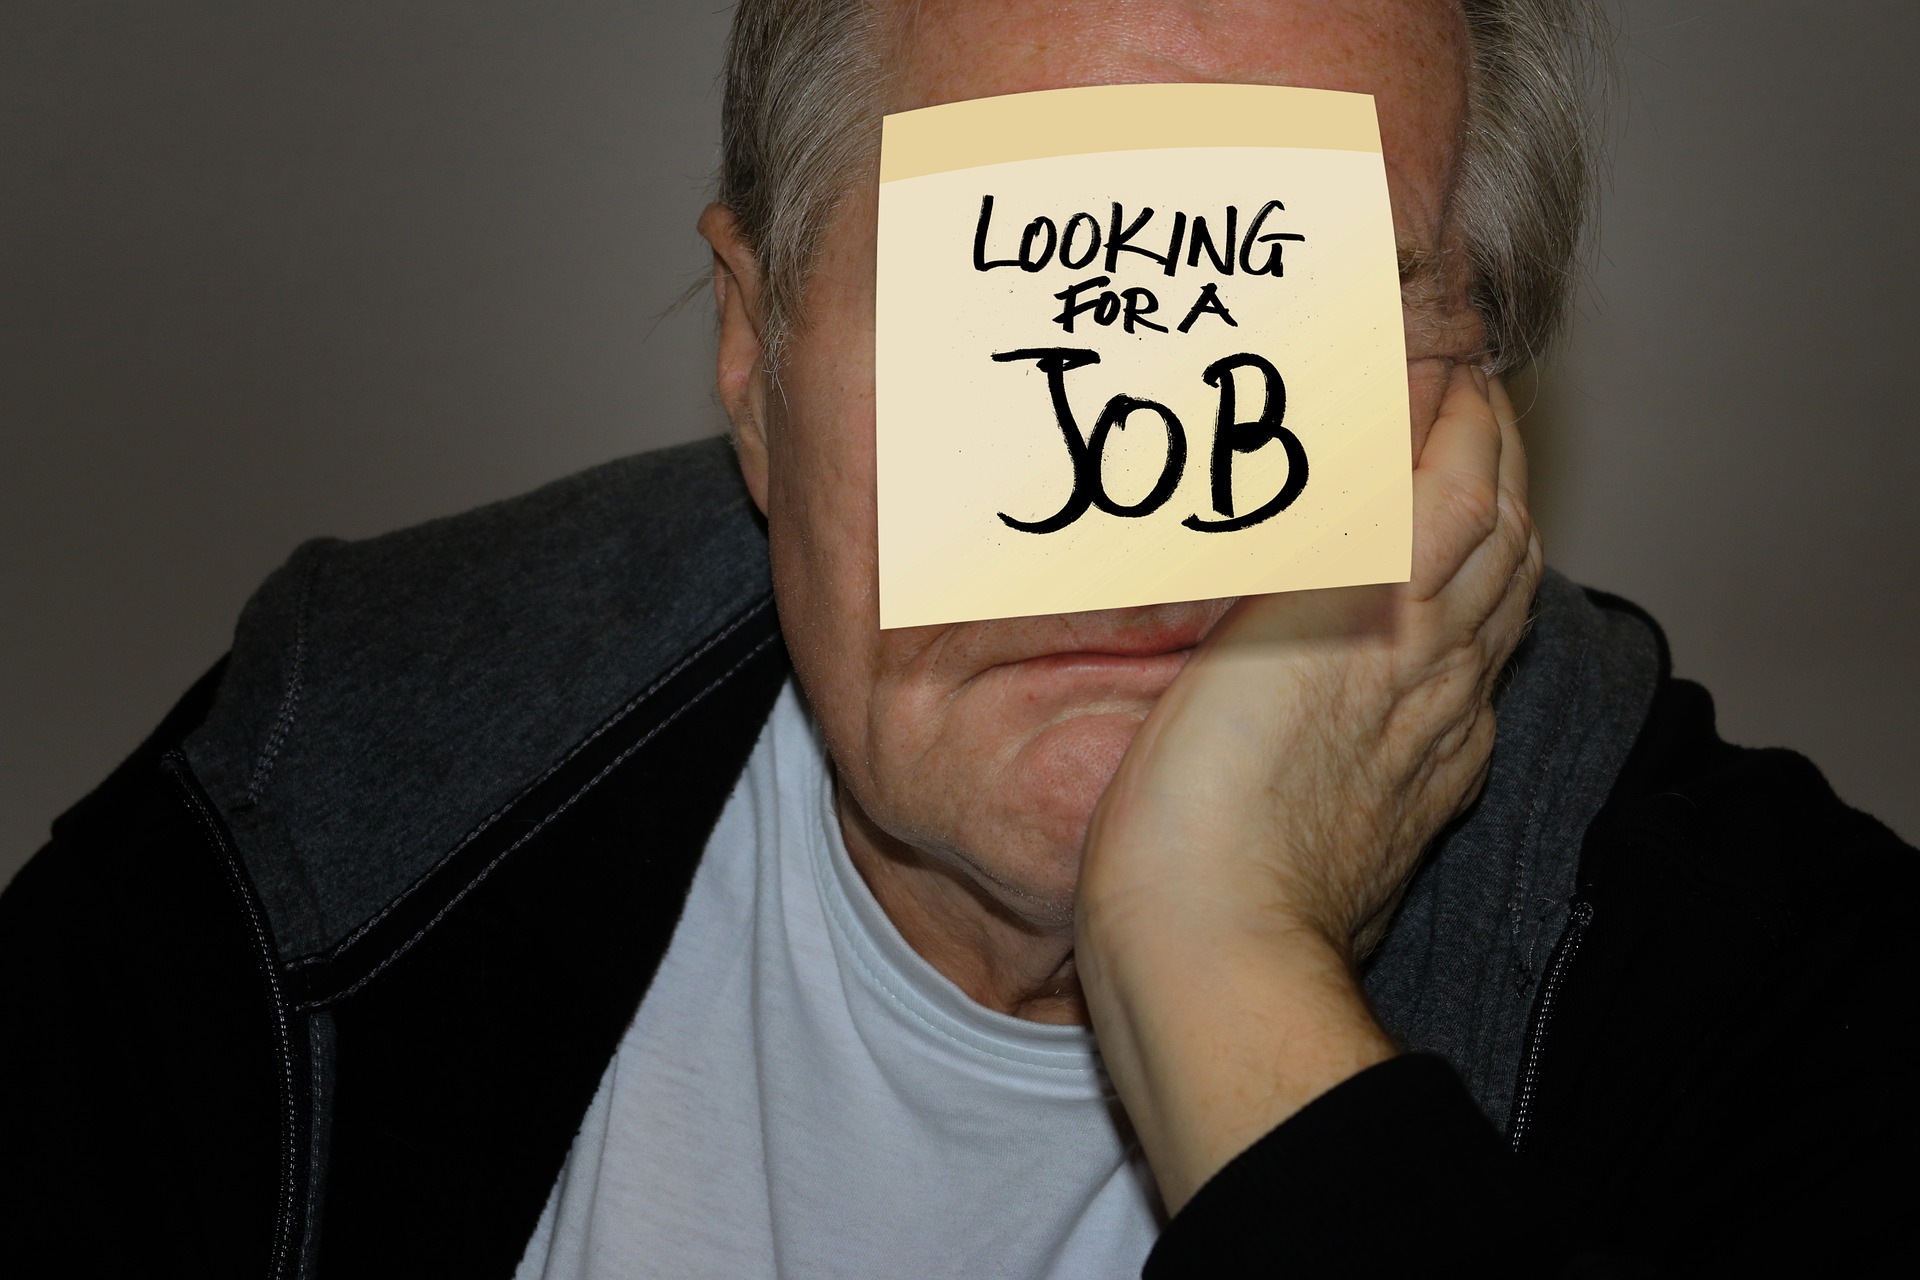 لماذا يقلق العمال الأكبر سنًا من احتمال العثور على وظيفة جديدة